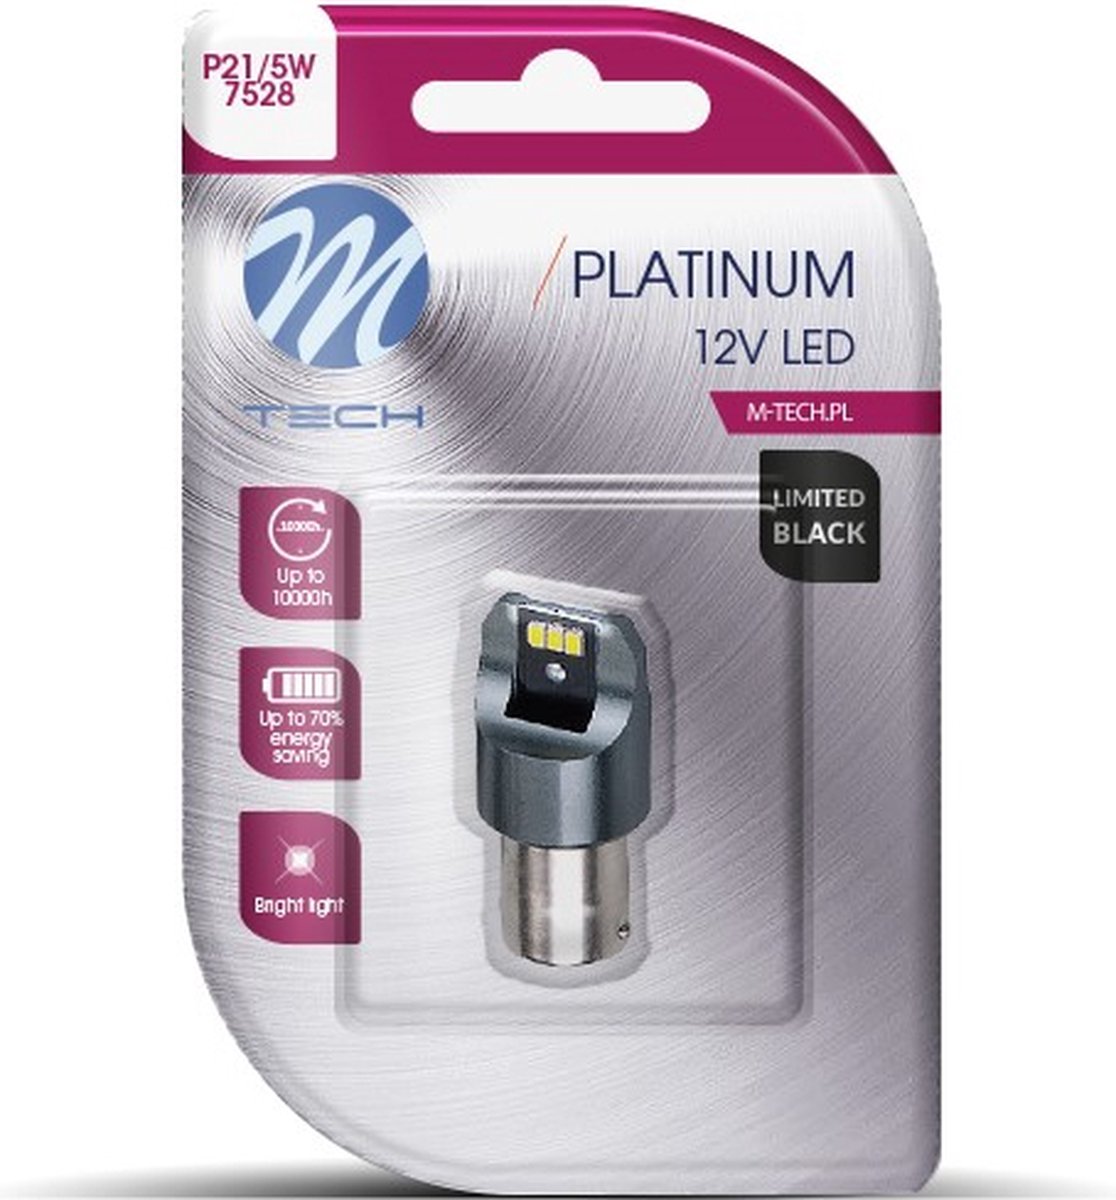 M-Tech LED P21/5W 12V - Platinum - Canbus - 6x Led diode - Wit - Enkel - Limited Black